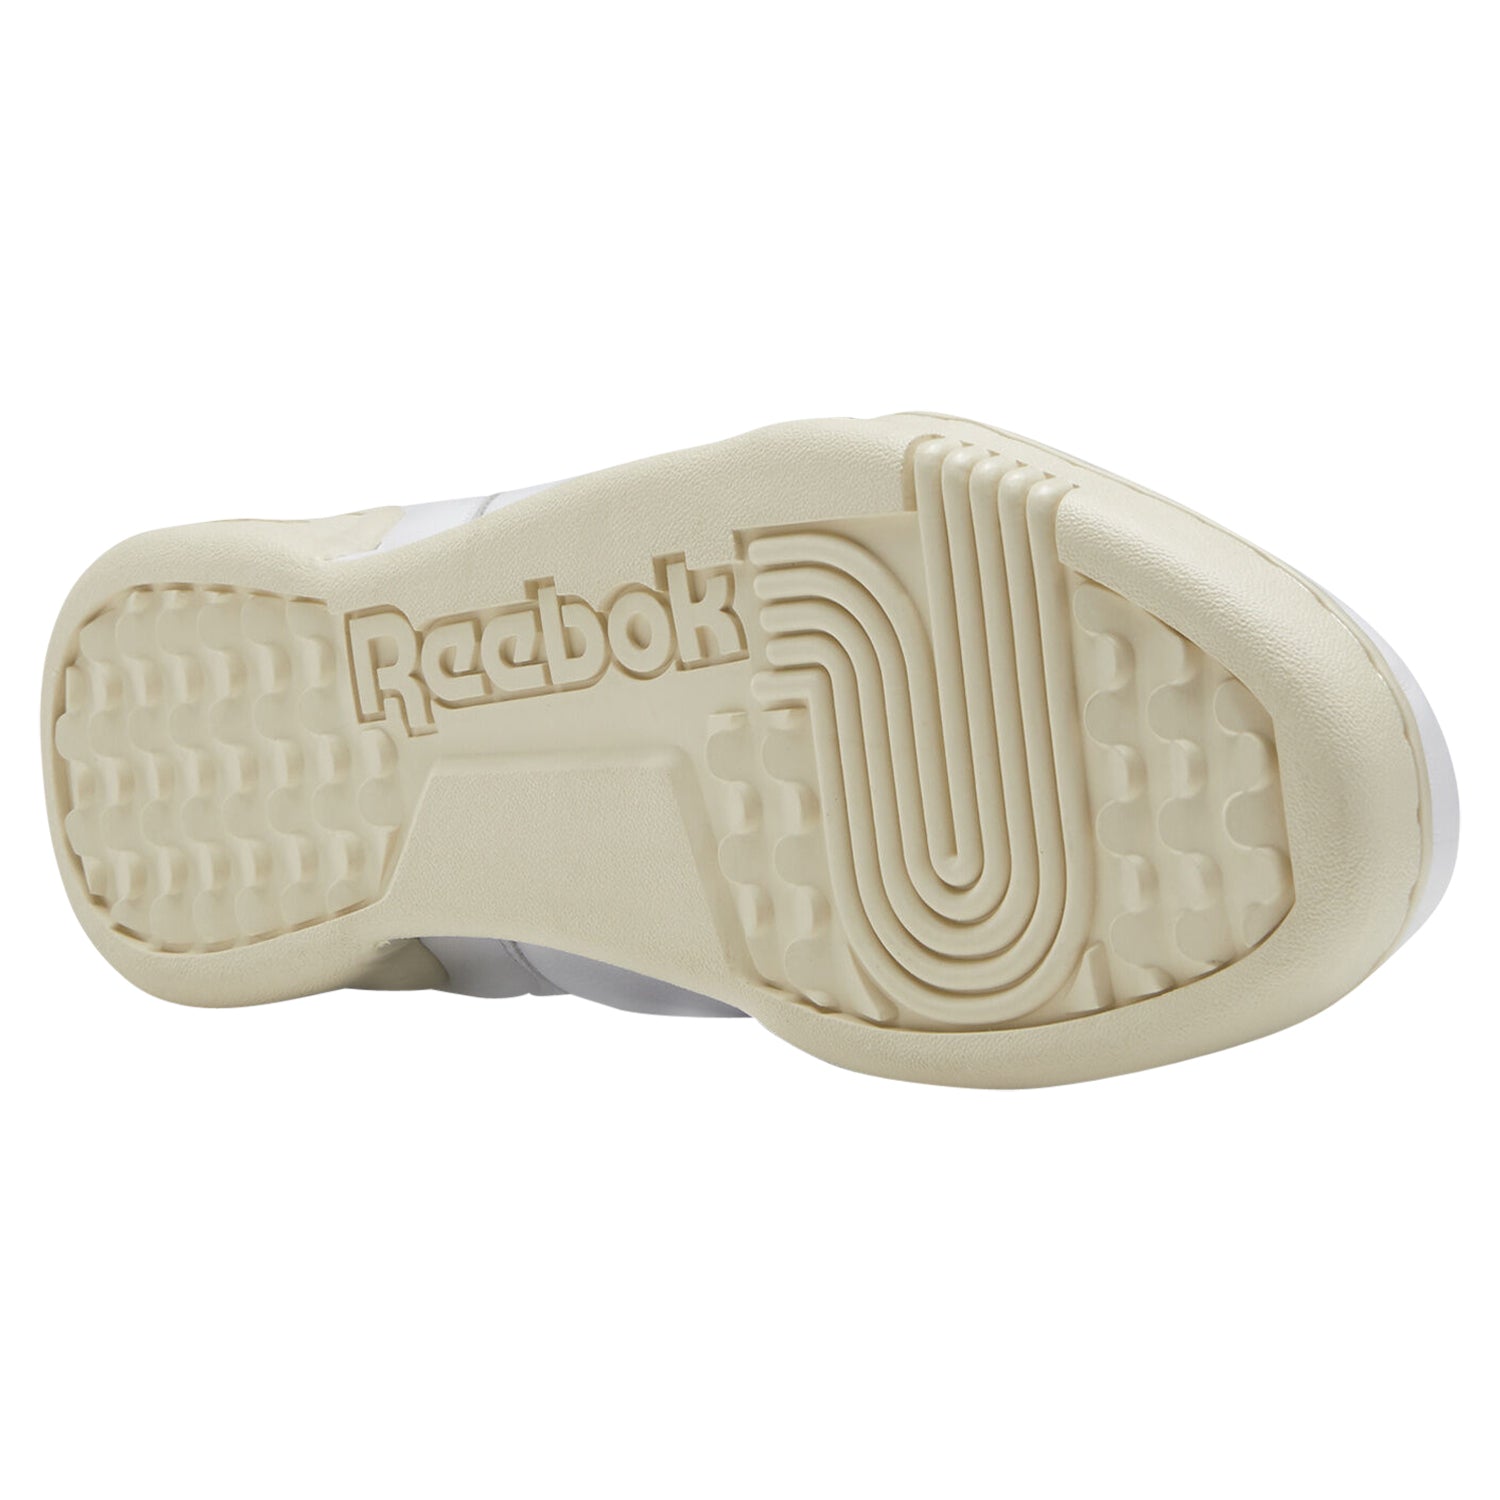 Reebok Men's Workout Plus Shoes - White